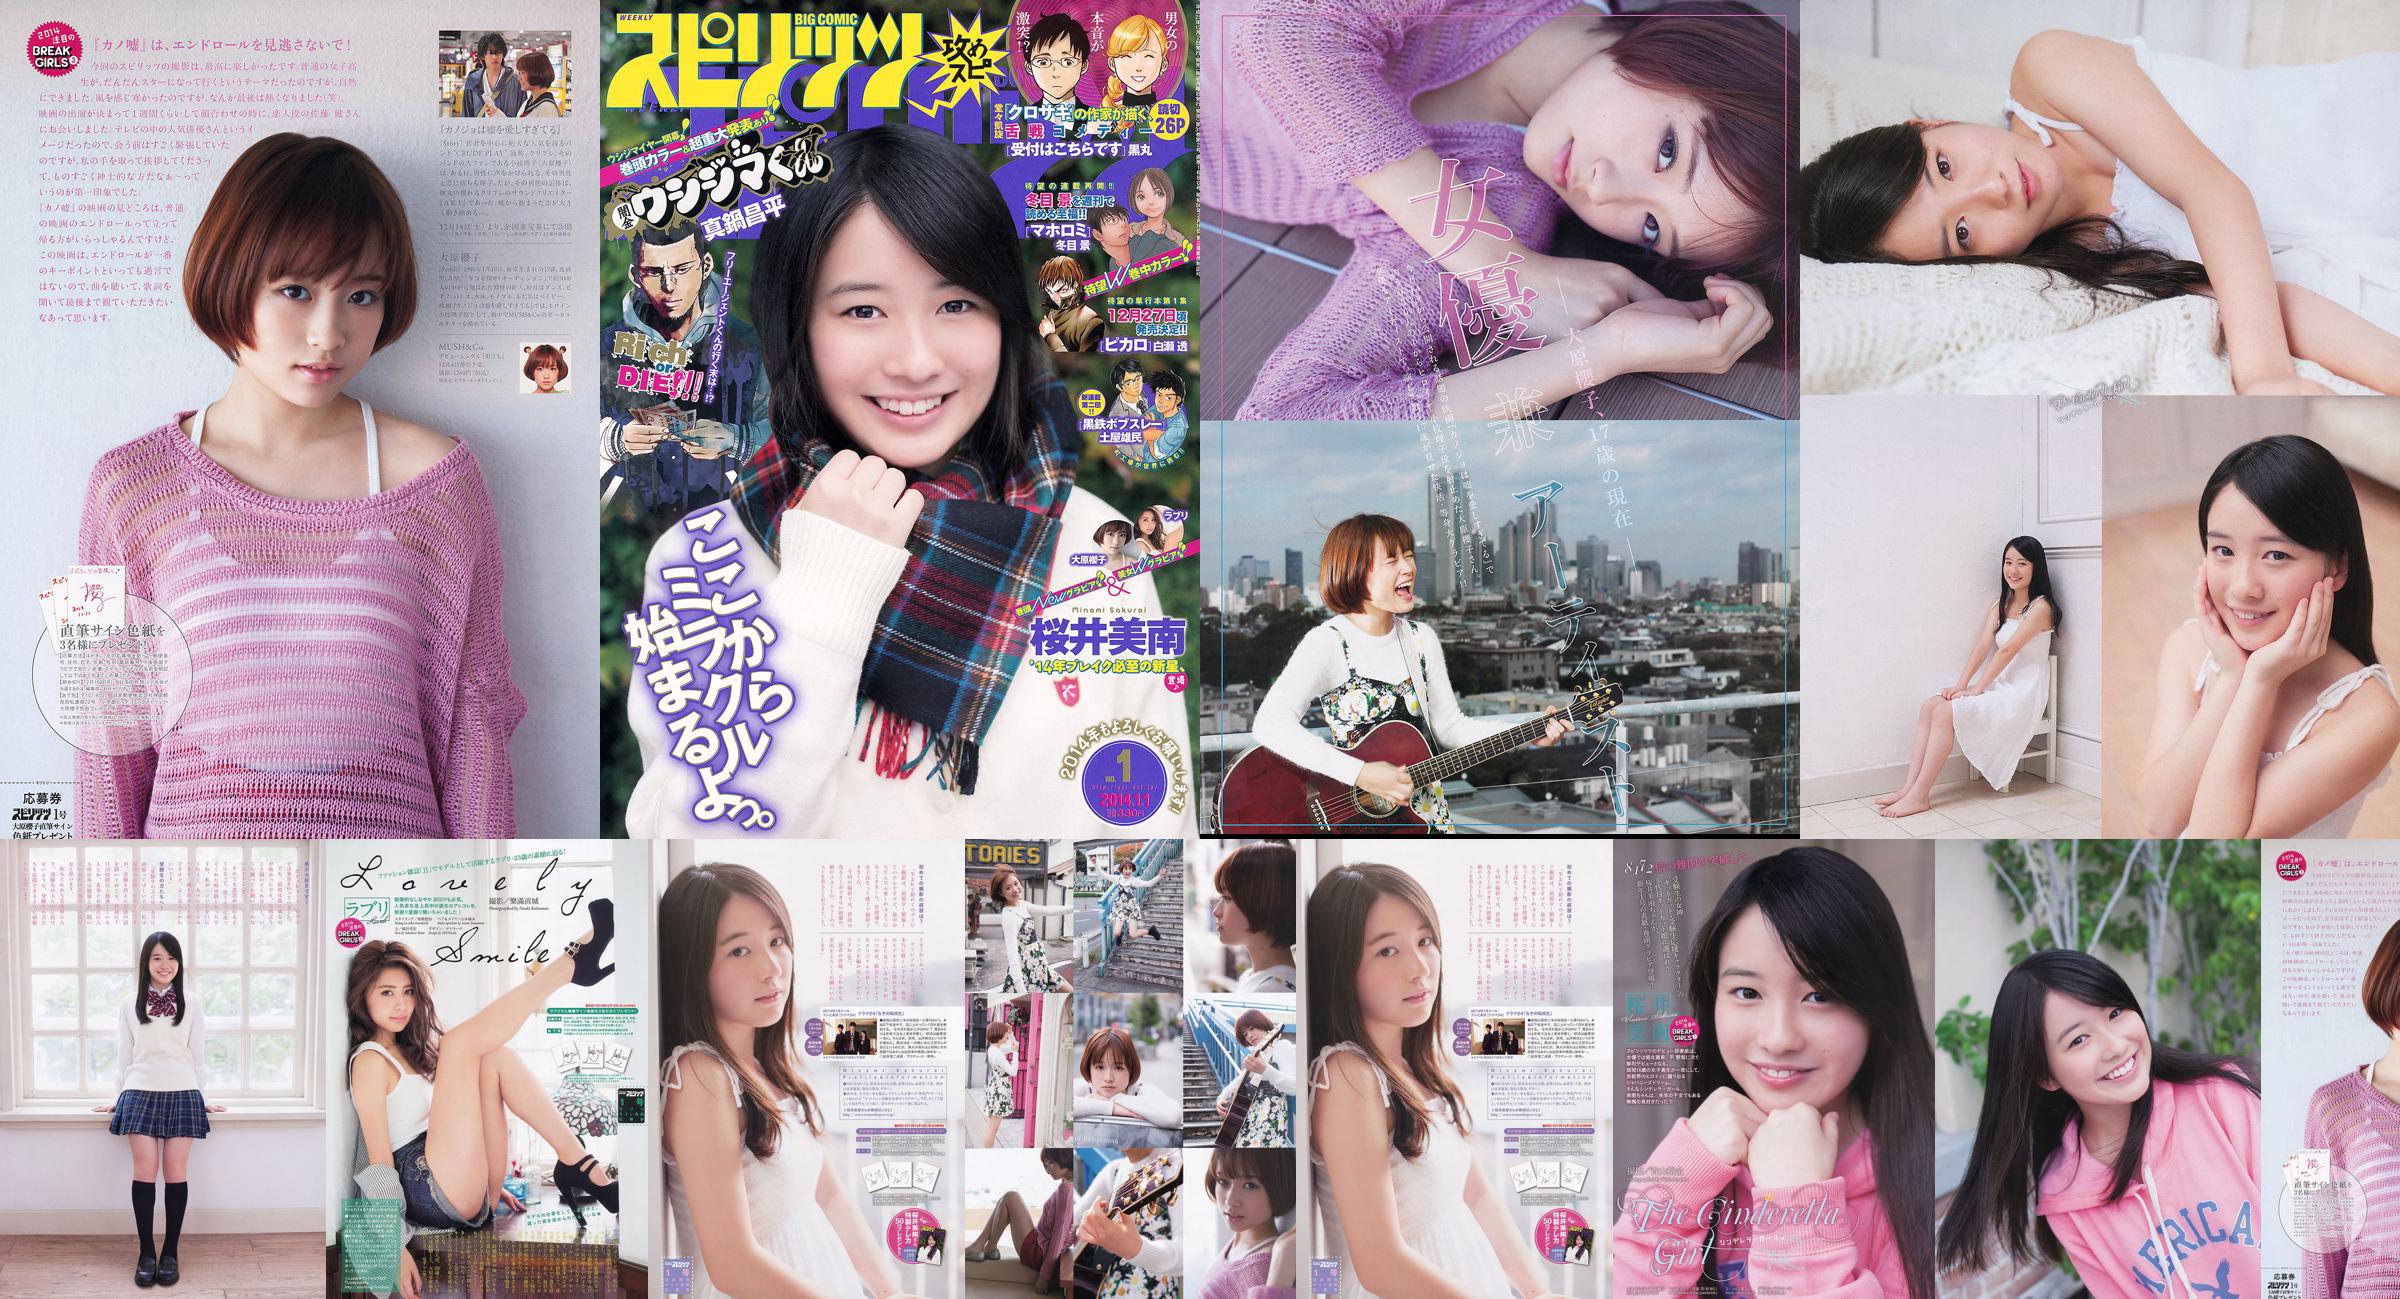 [Grands esprits de la bande dessinée hebdomadaire] Sakurai Minan Ohara Sakurako 2014 Magazine photo n ° 01 No.595d7e Page 1